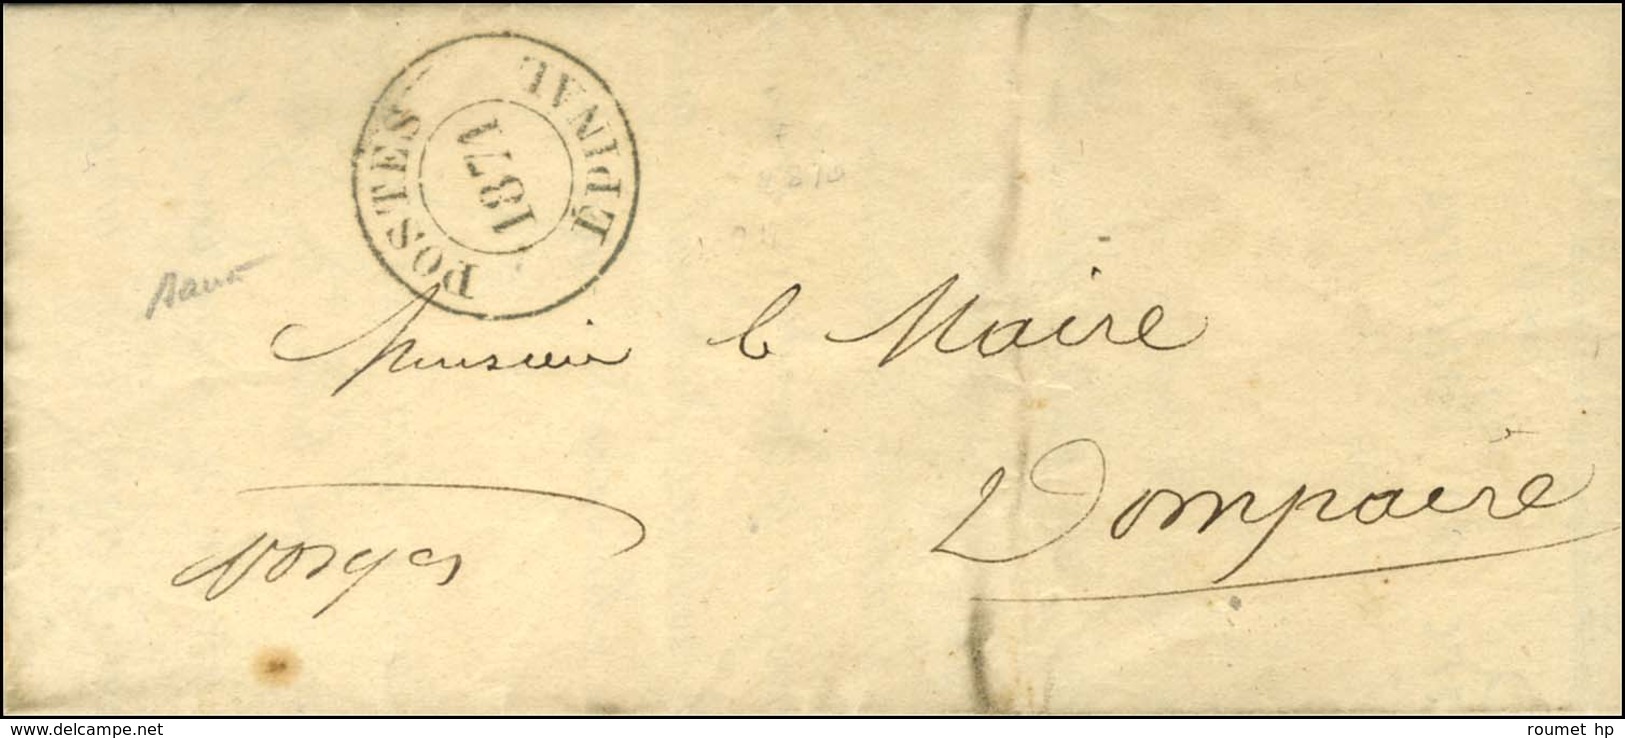 Cachet Provisoire POSTES / 1871 / EPINAL Sur Lettre Avec Texte Daté Le 13 Février 1871 Adressée En Franchise Au Maire De - Guerra De 1870